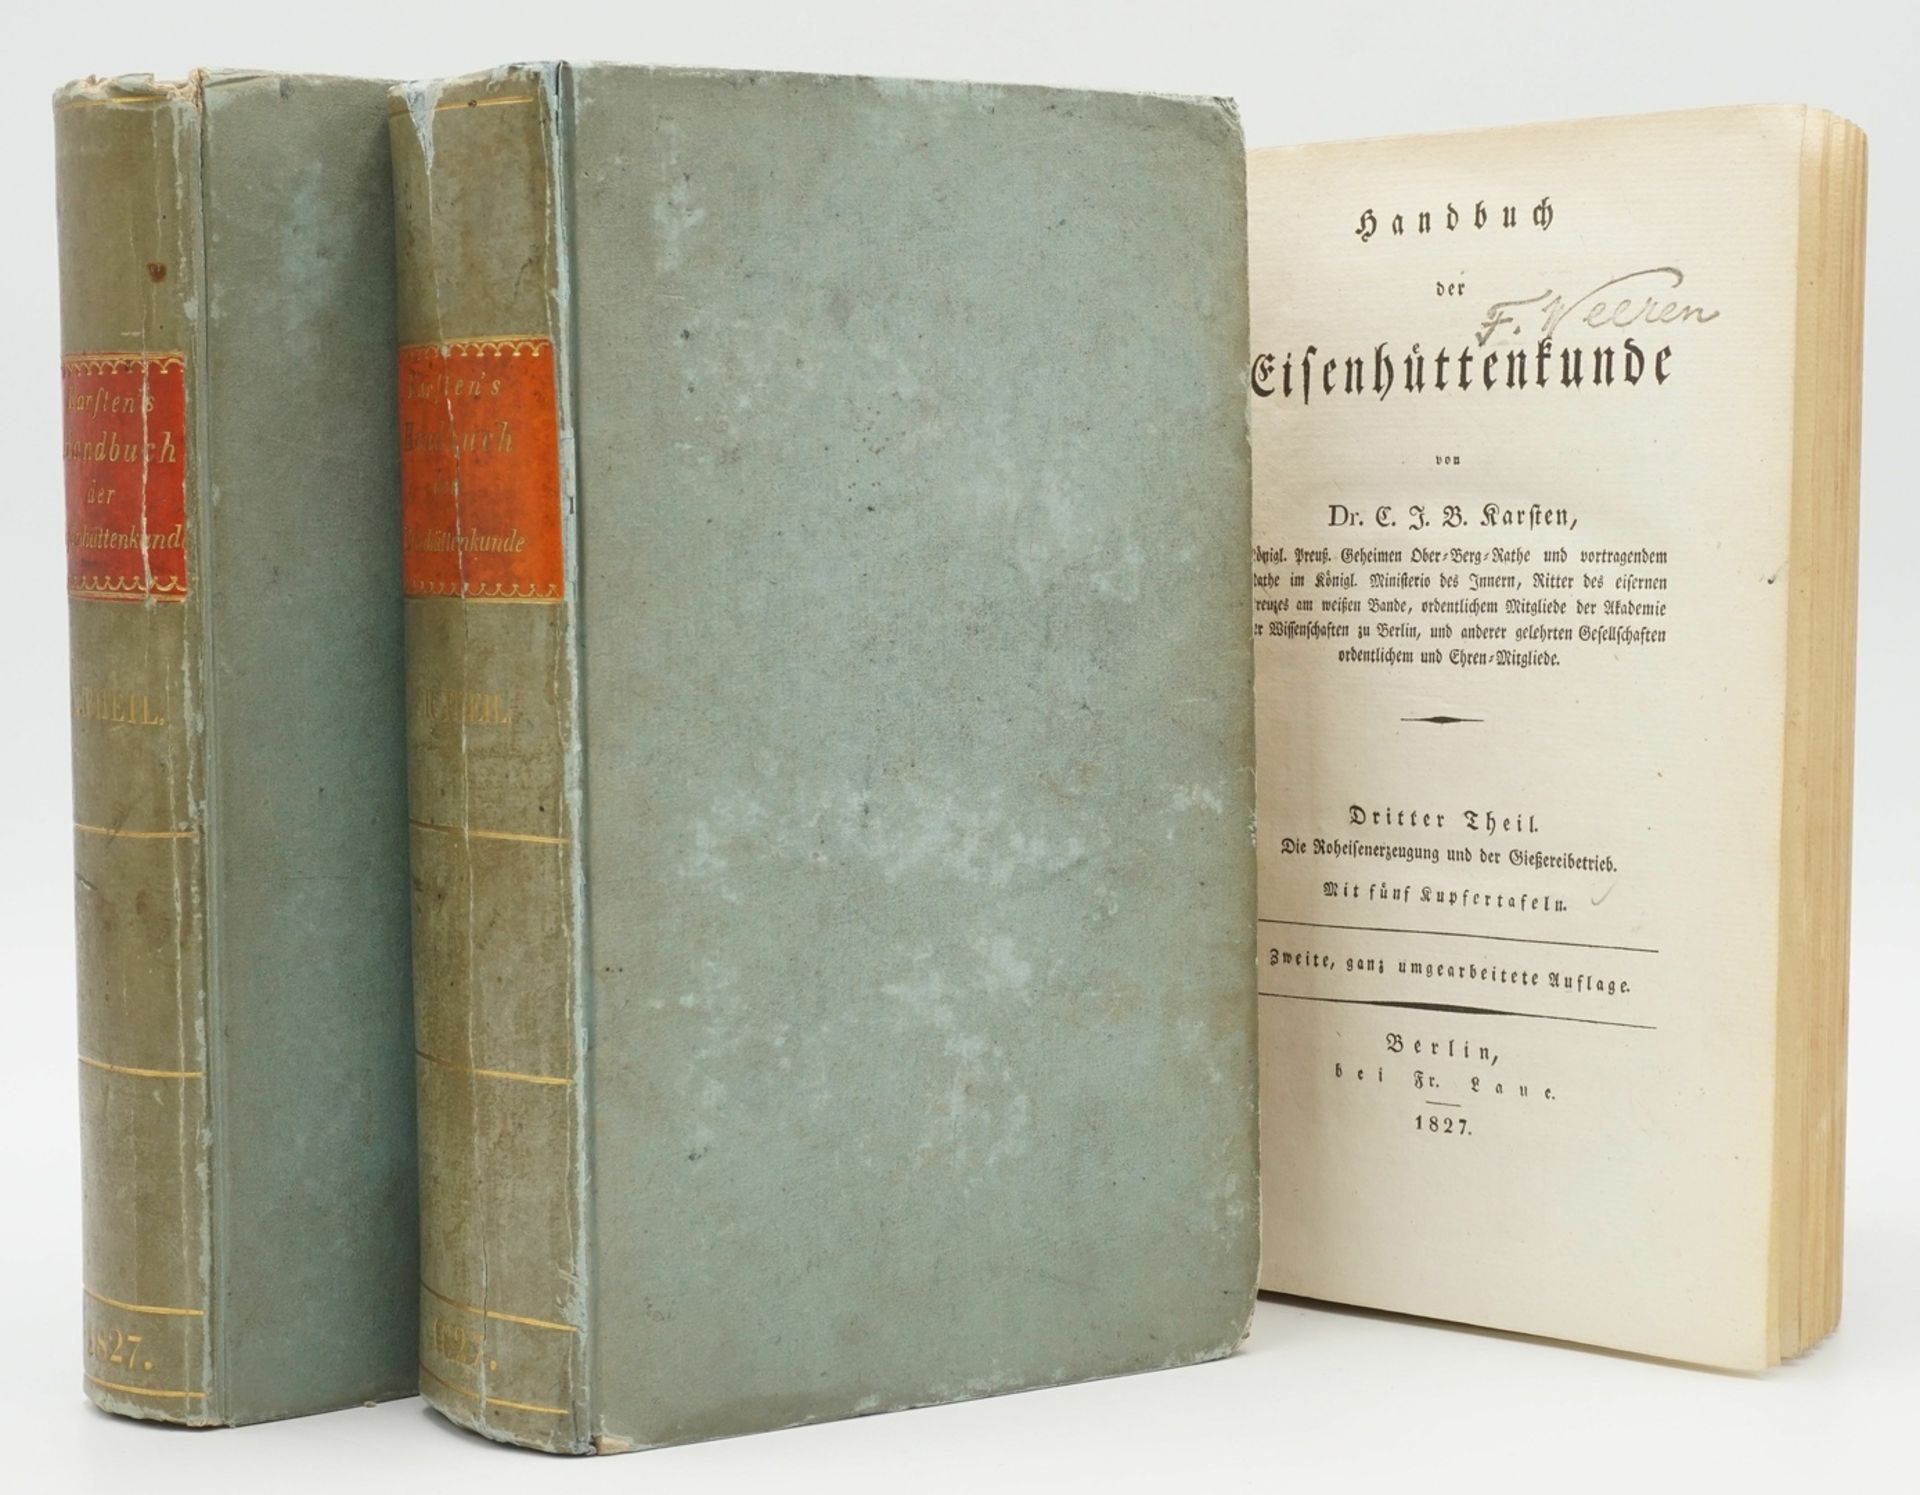 Dr. Carl Johann Bernhard Karsten, "Handbuch der Eisenhüttenkunde"